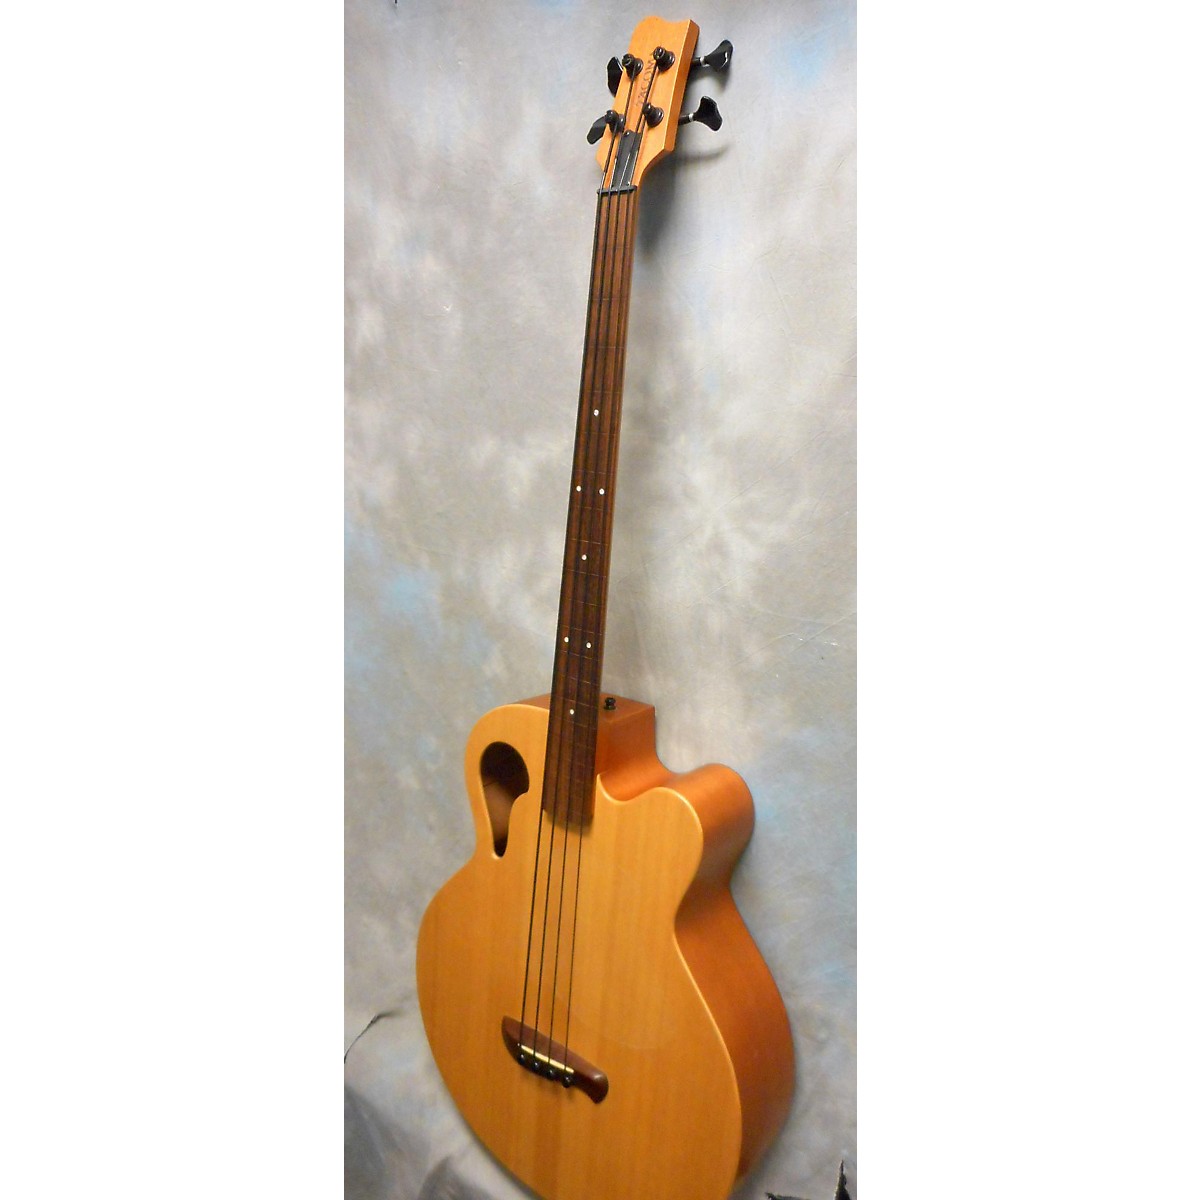 Used Tacoma Thunderchief Acoustic Bass Guitar Guitar Center | My XXX